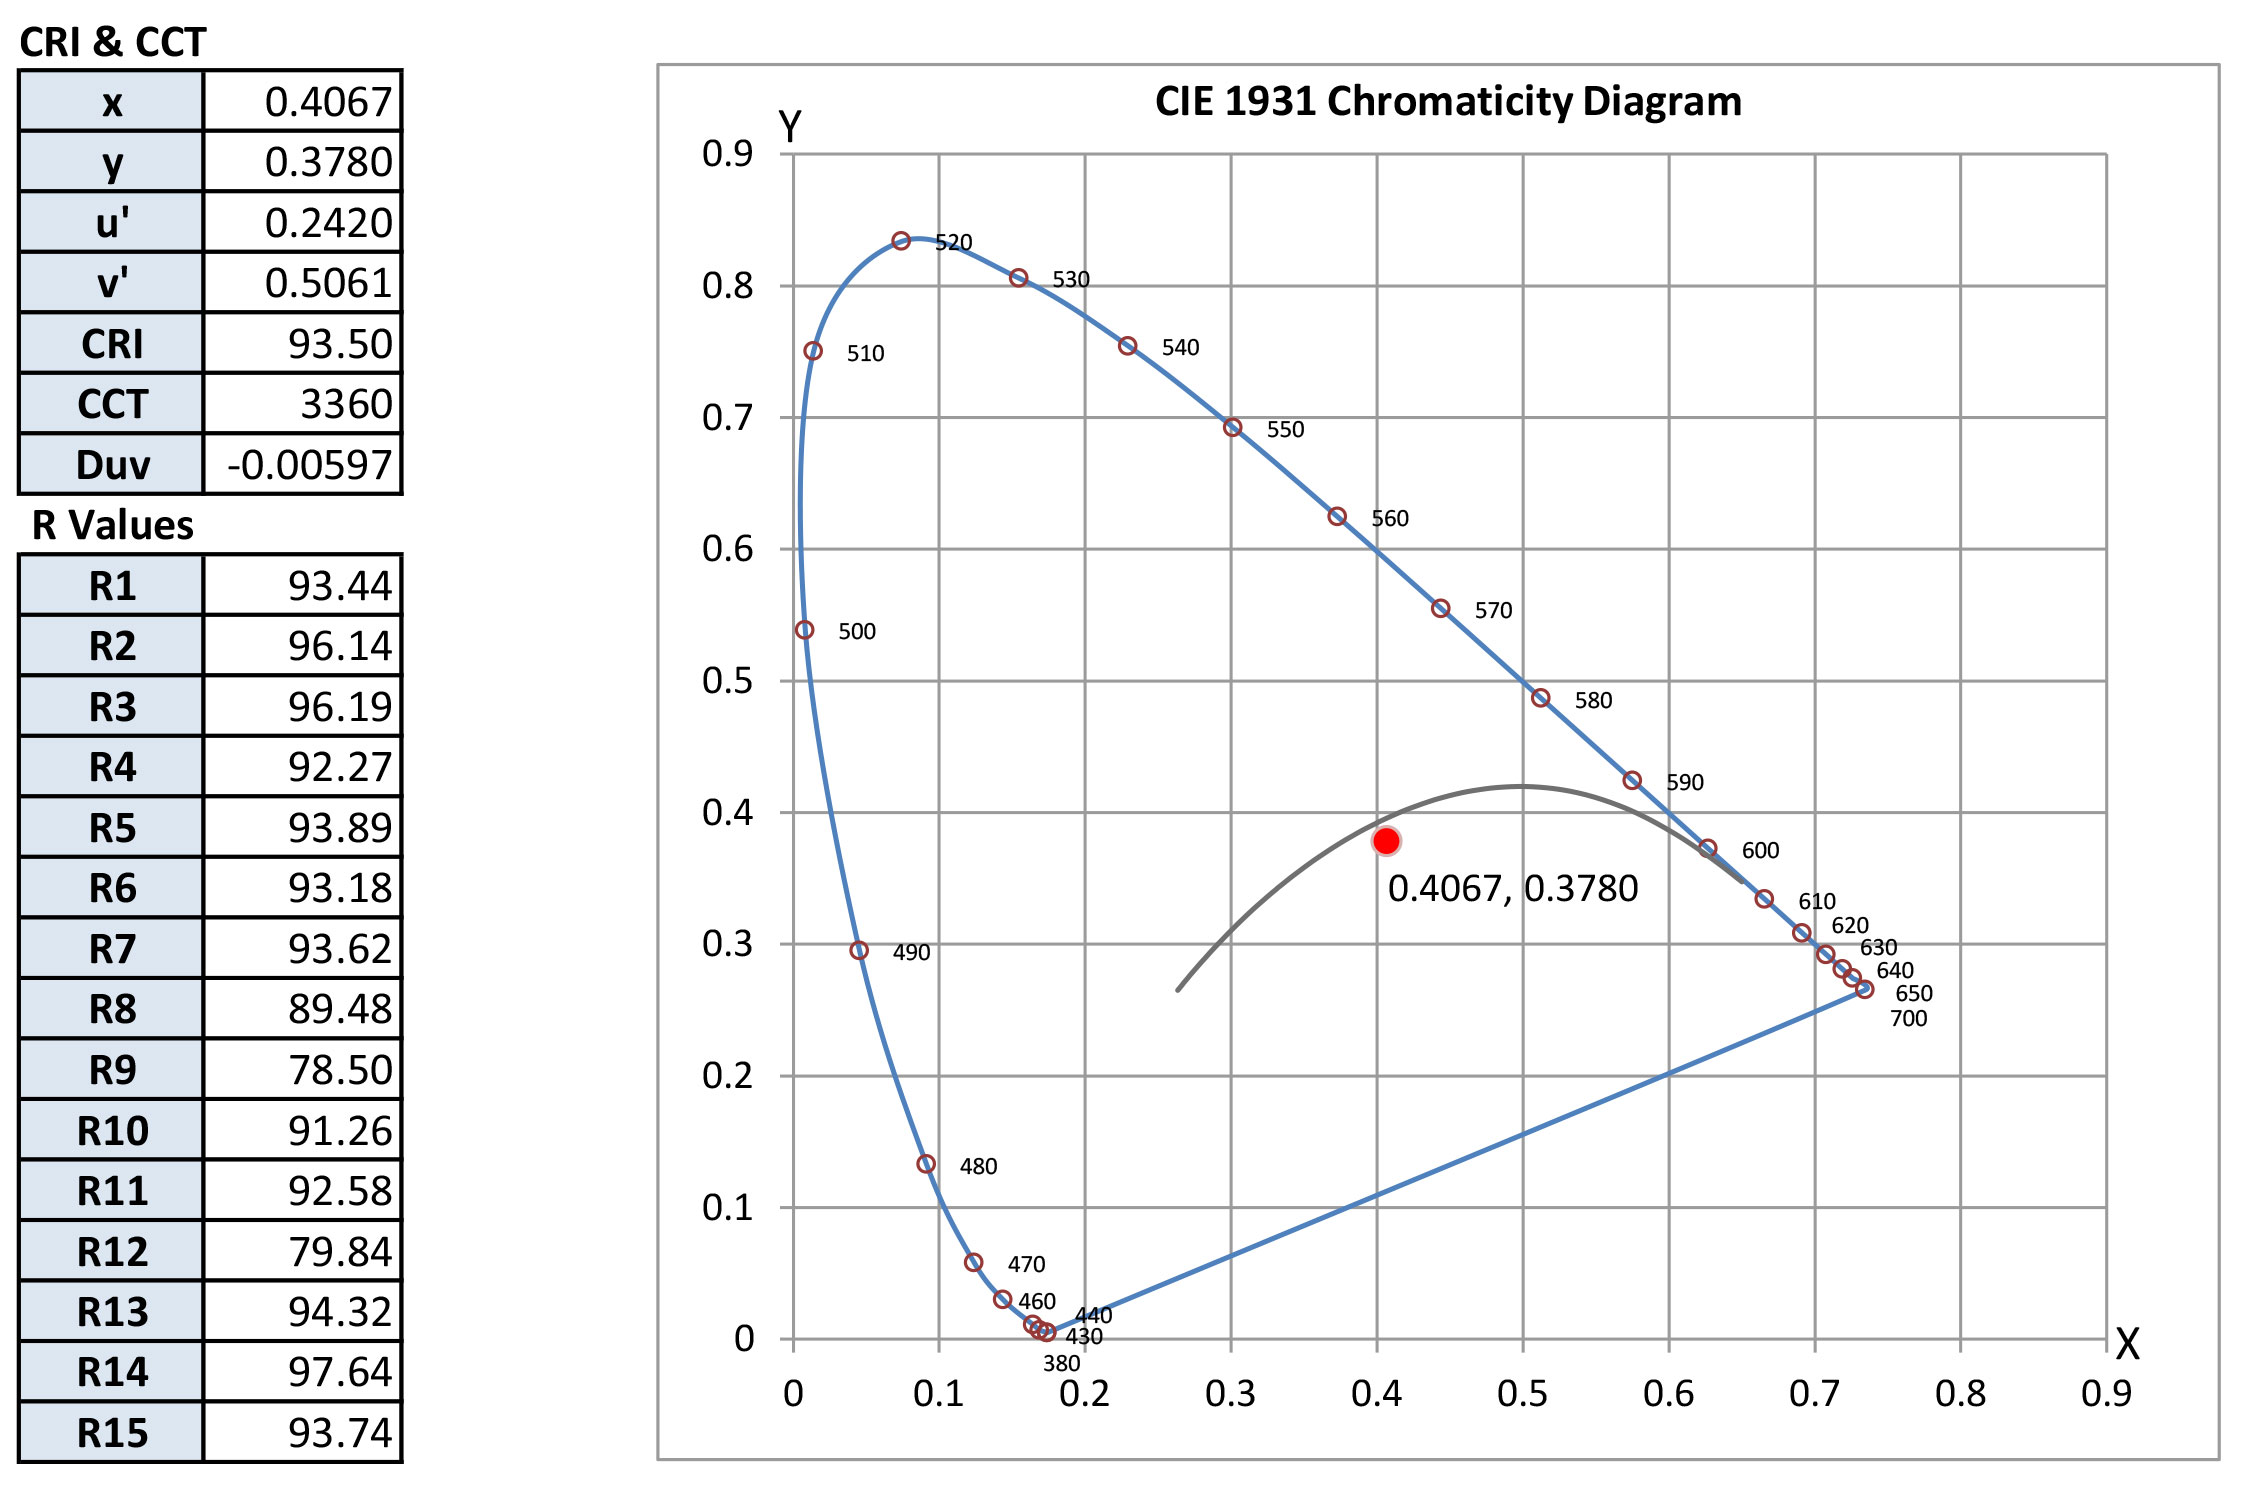 CIE 1931 Chromaticity Diagram